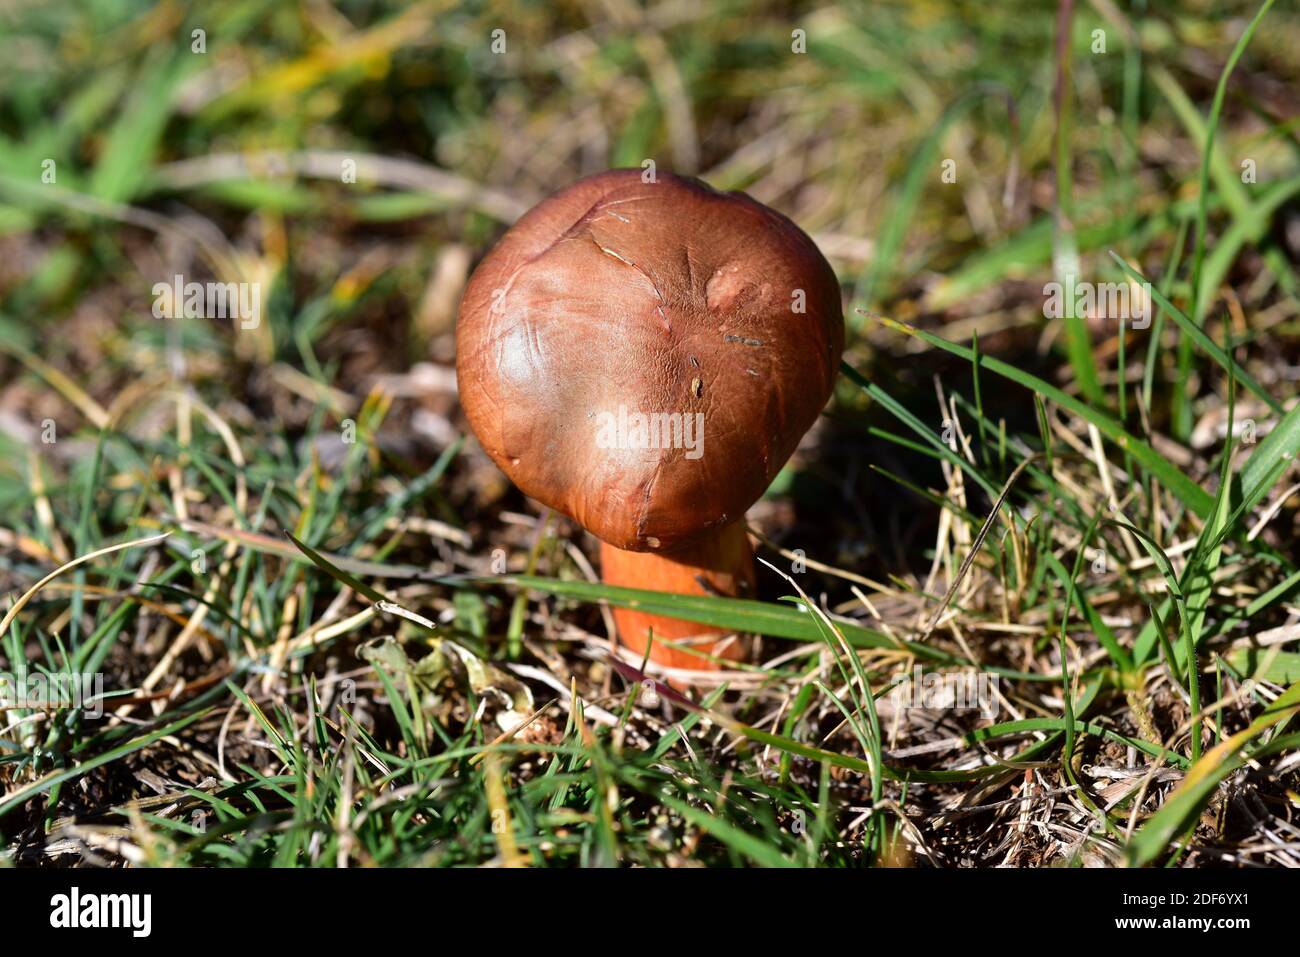 Le slimecap brun ou la pointe de cuivre (Chroogomphus rutilus) est un champignon comestible. Cette photo a été prise dans une forêt de pins près de Cantavieja, province de Teruel, Banque D'Images